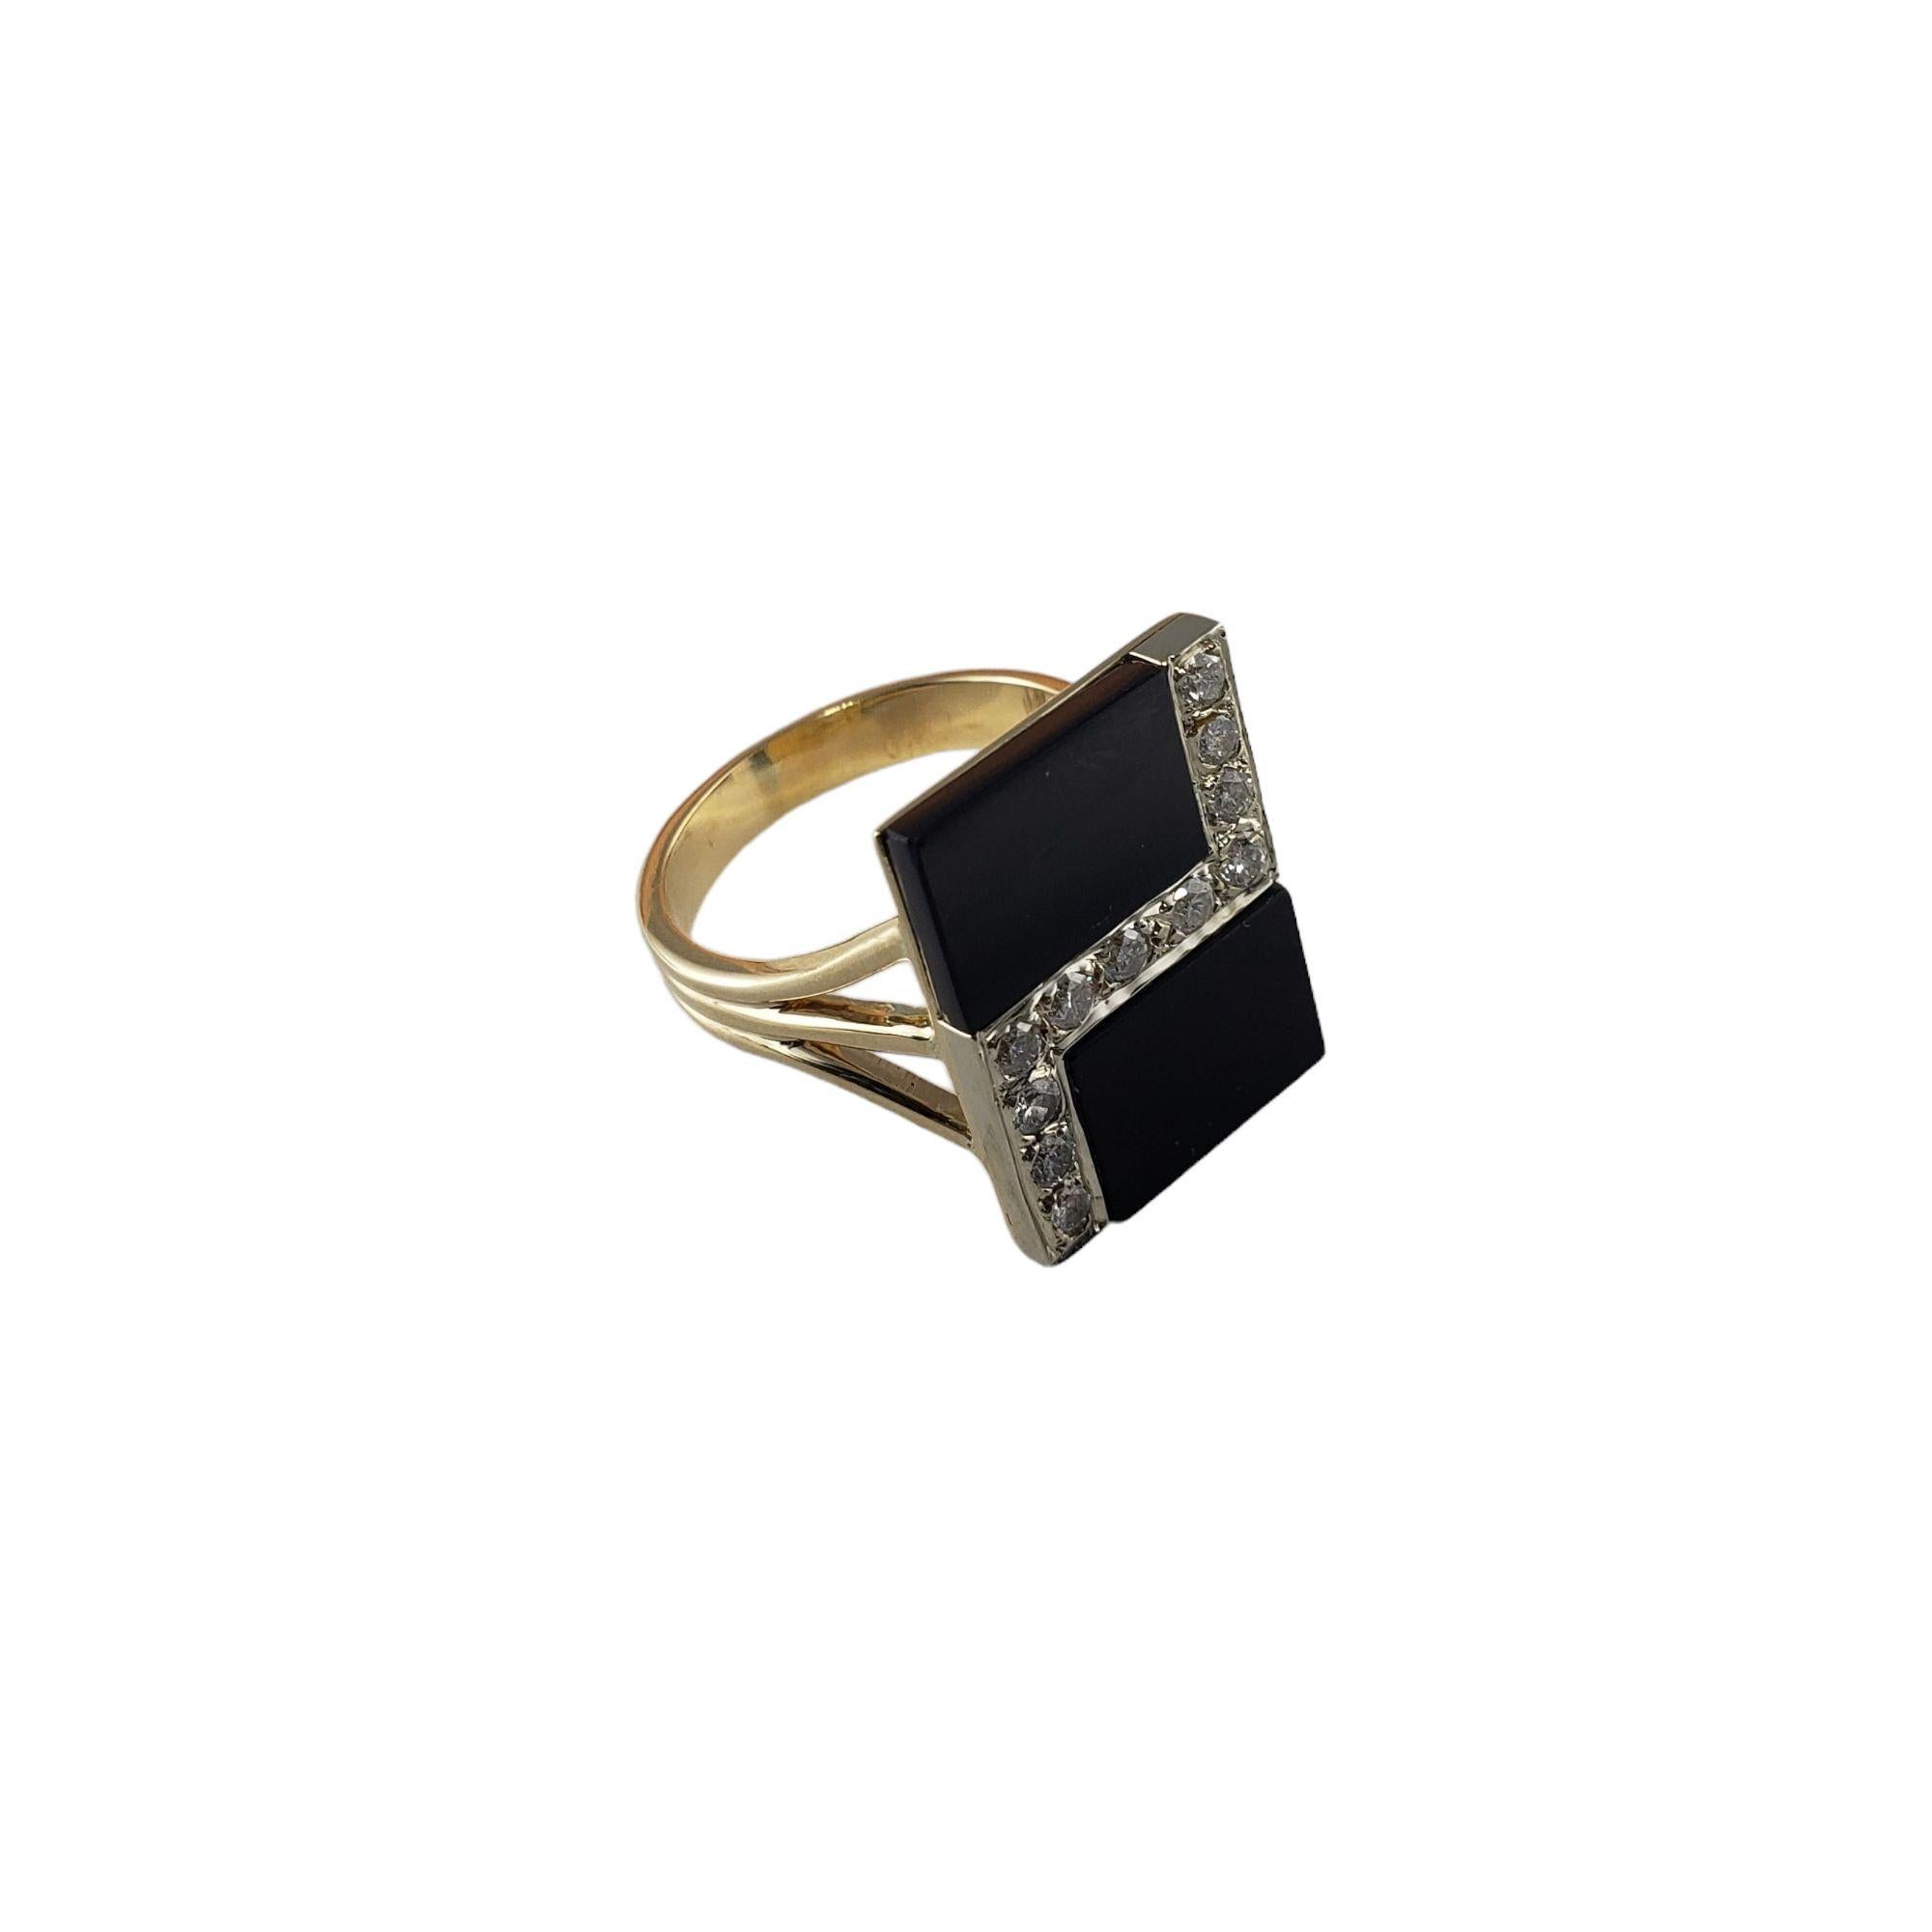 Vintage 14 Karat Gelbgold Onyx und Diamant Ring Größe 7,25-

Dieser elegante, atemberaubende Ring ist mit schwarzem Onyx und 11 runden Diamanten im Brillantschliff in klassischem 14-karätigem Gelbgold gefasst. Die Oberseite des Rings misst 19 mm x